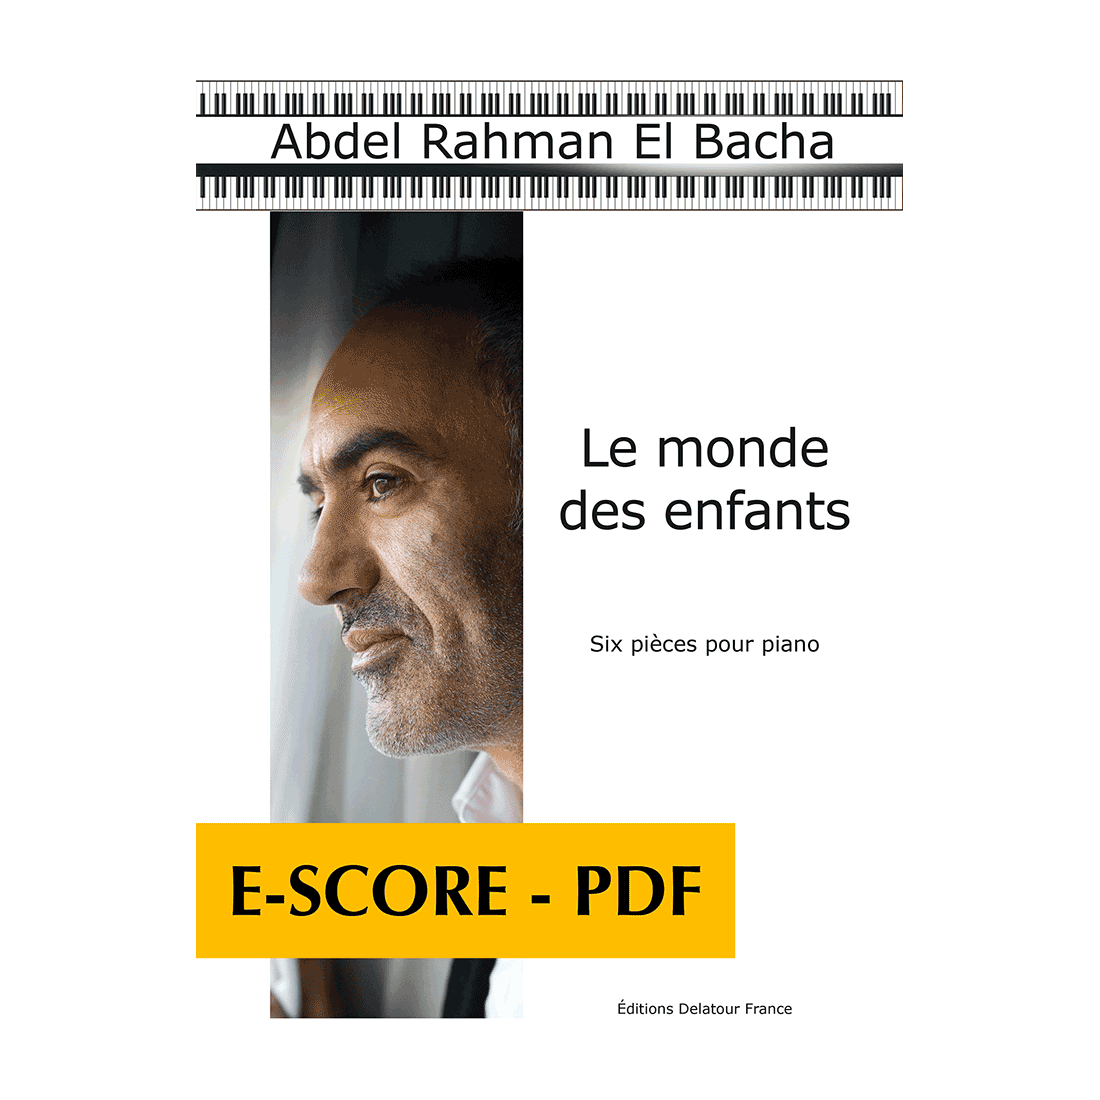 Le monde des enfants - Sechs Stücke für Klavier - E-score PDF